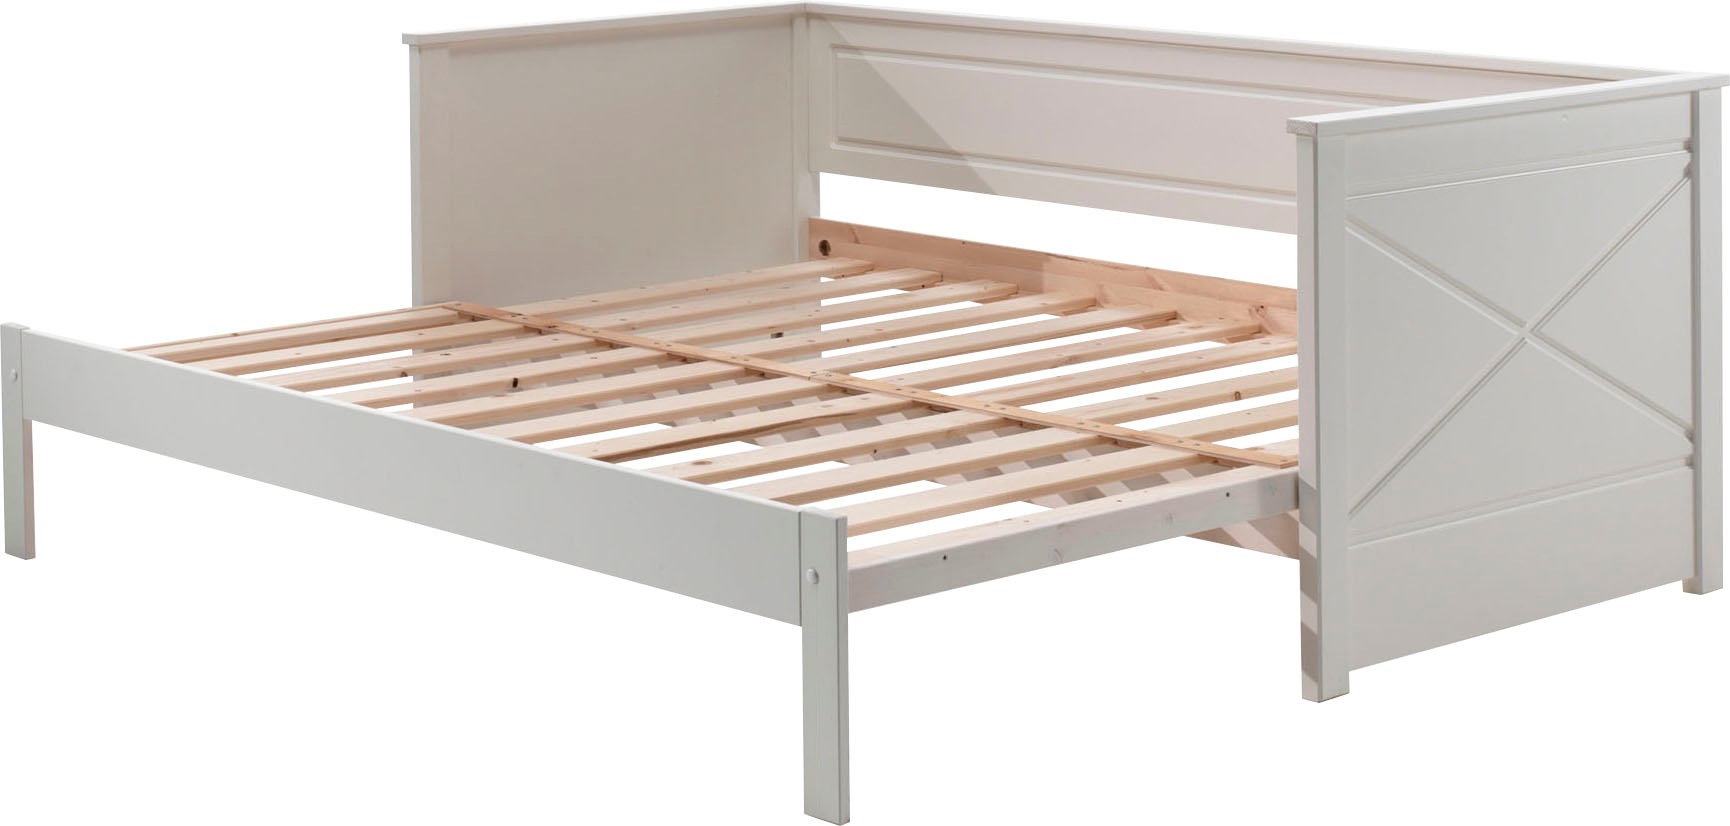 Vipack Bett »Vipack Pino«, Kojenbett LF 90x200 cm, ausziehen auf 180x200 cm, Ausf. Weiß lackiert